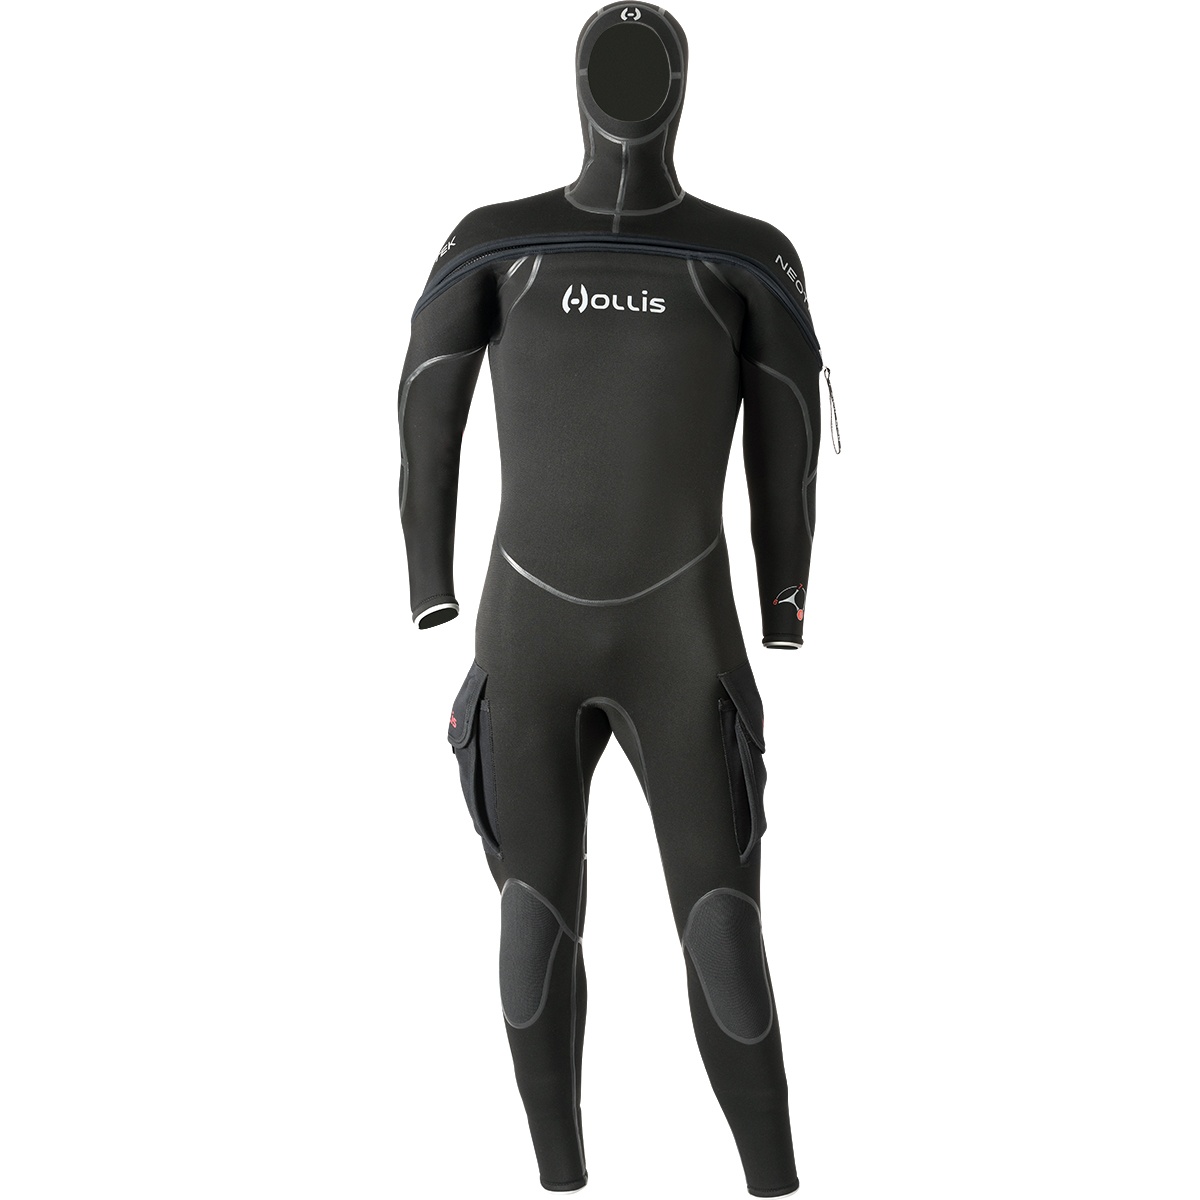 Hollis NeoTek 4/3 Wetsuit For Sale Online in Canada Dan's Dive